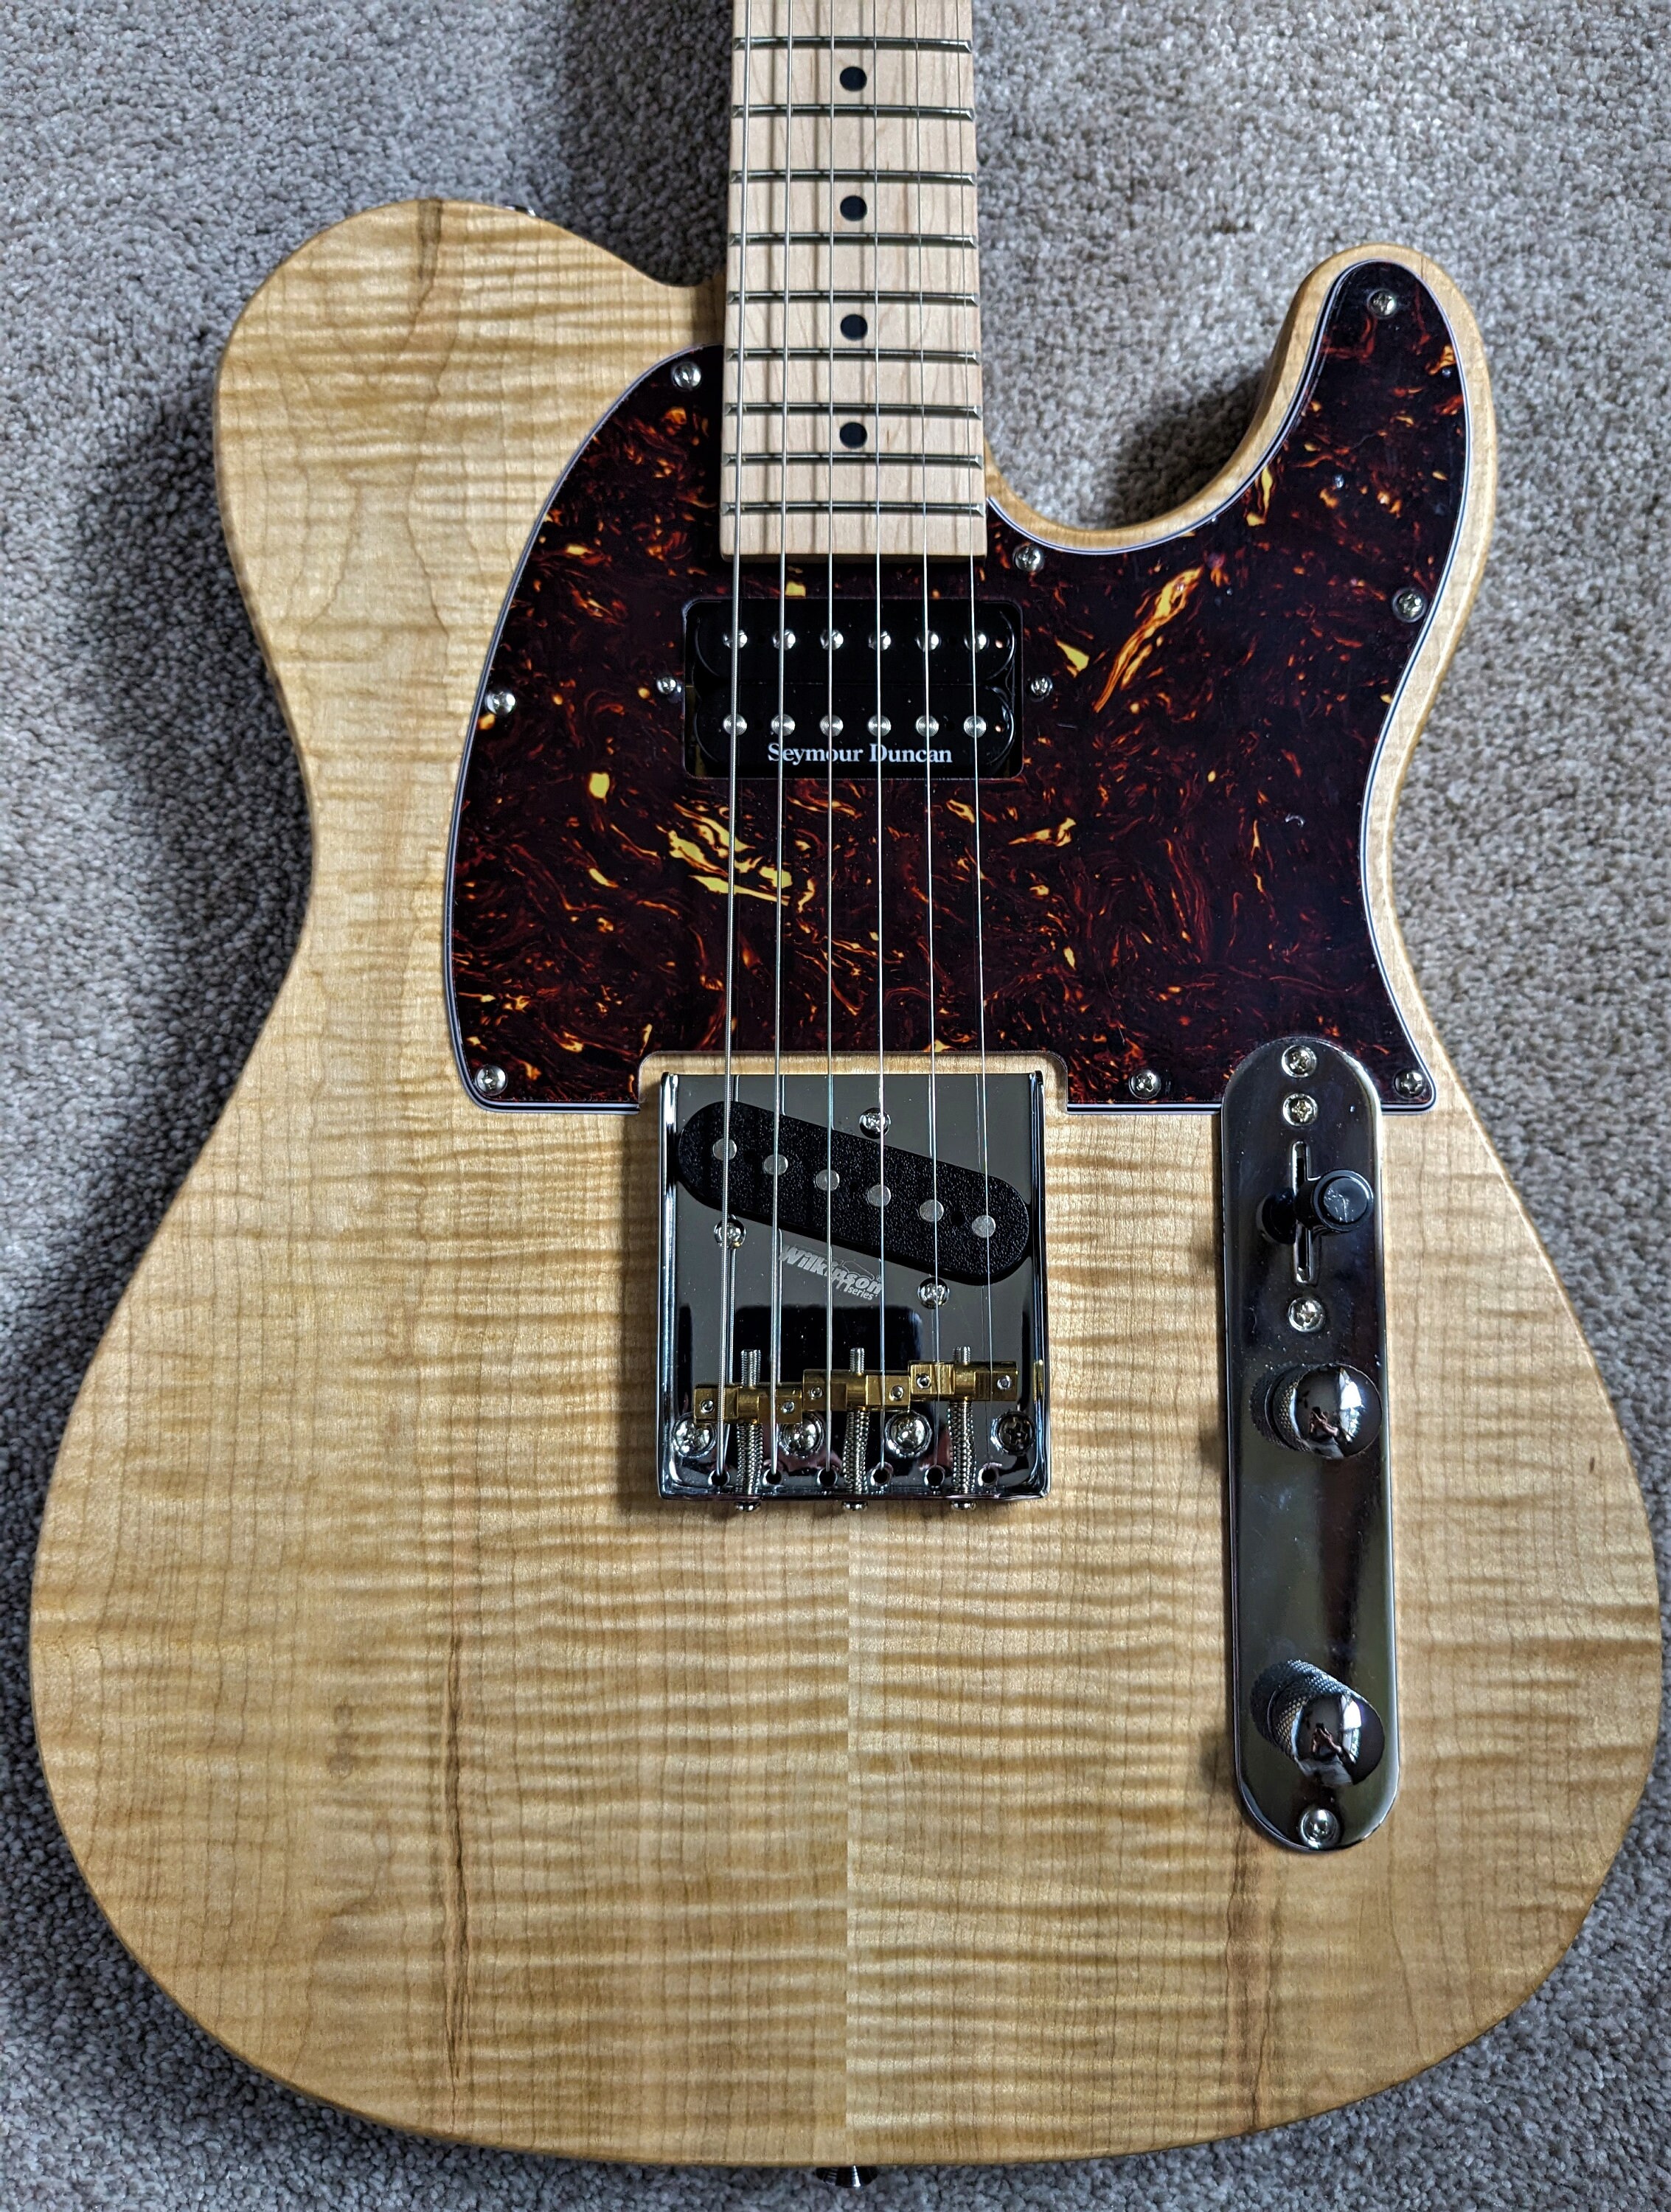 2ピースギタートップ用材木 Soft Maple